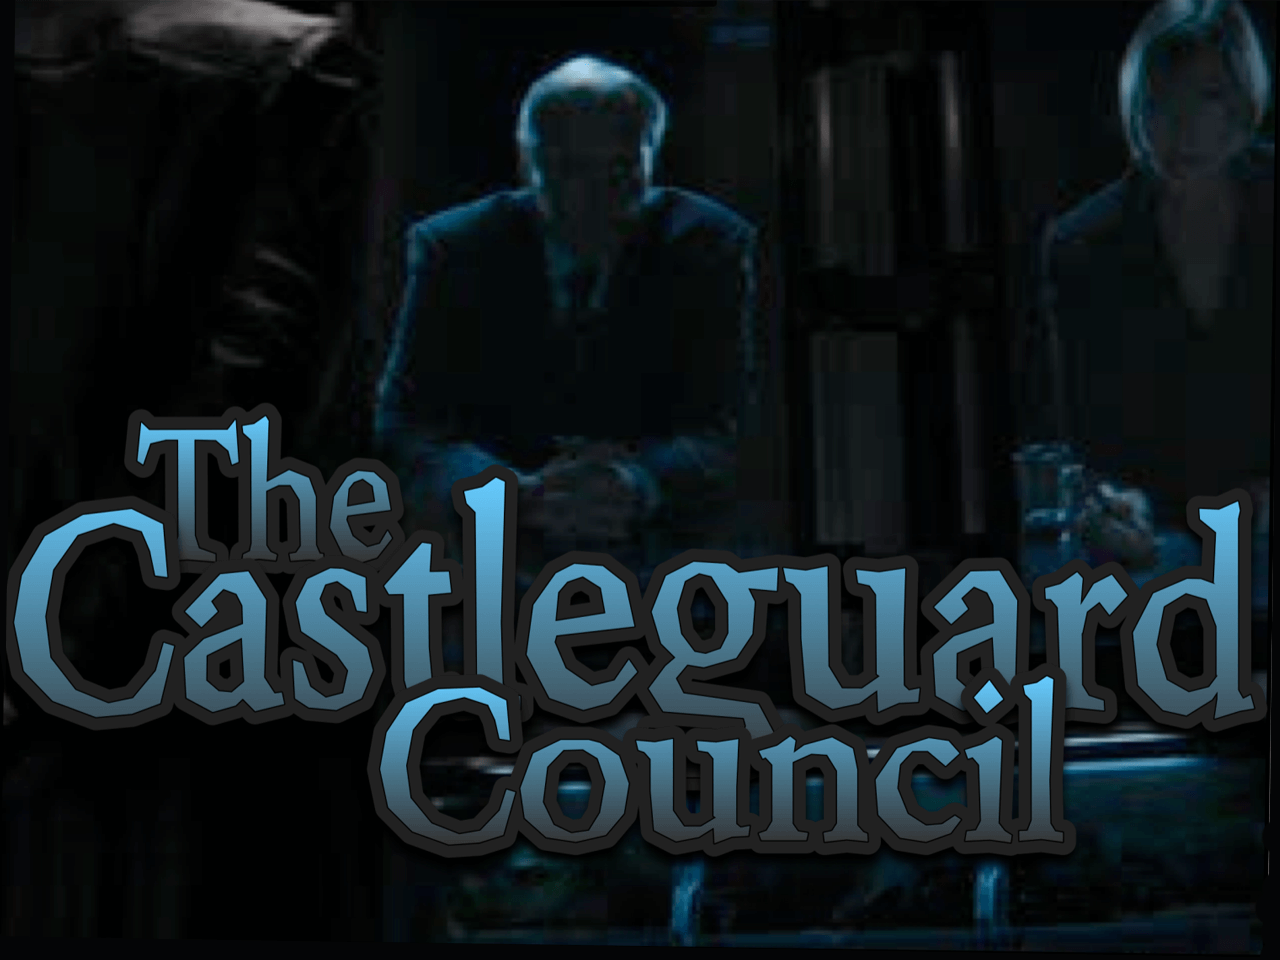 The Castleguard Council